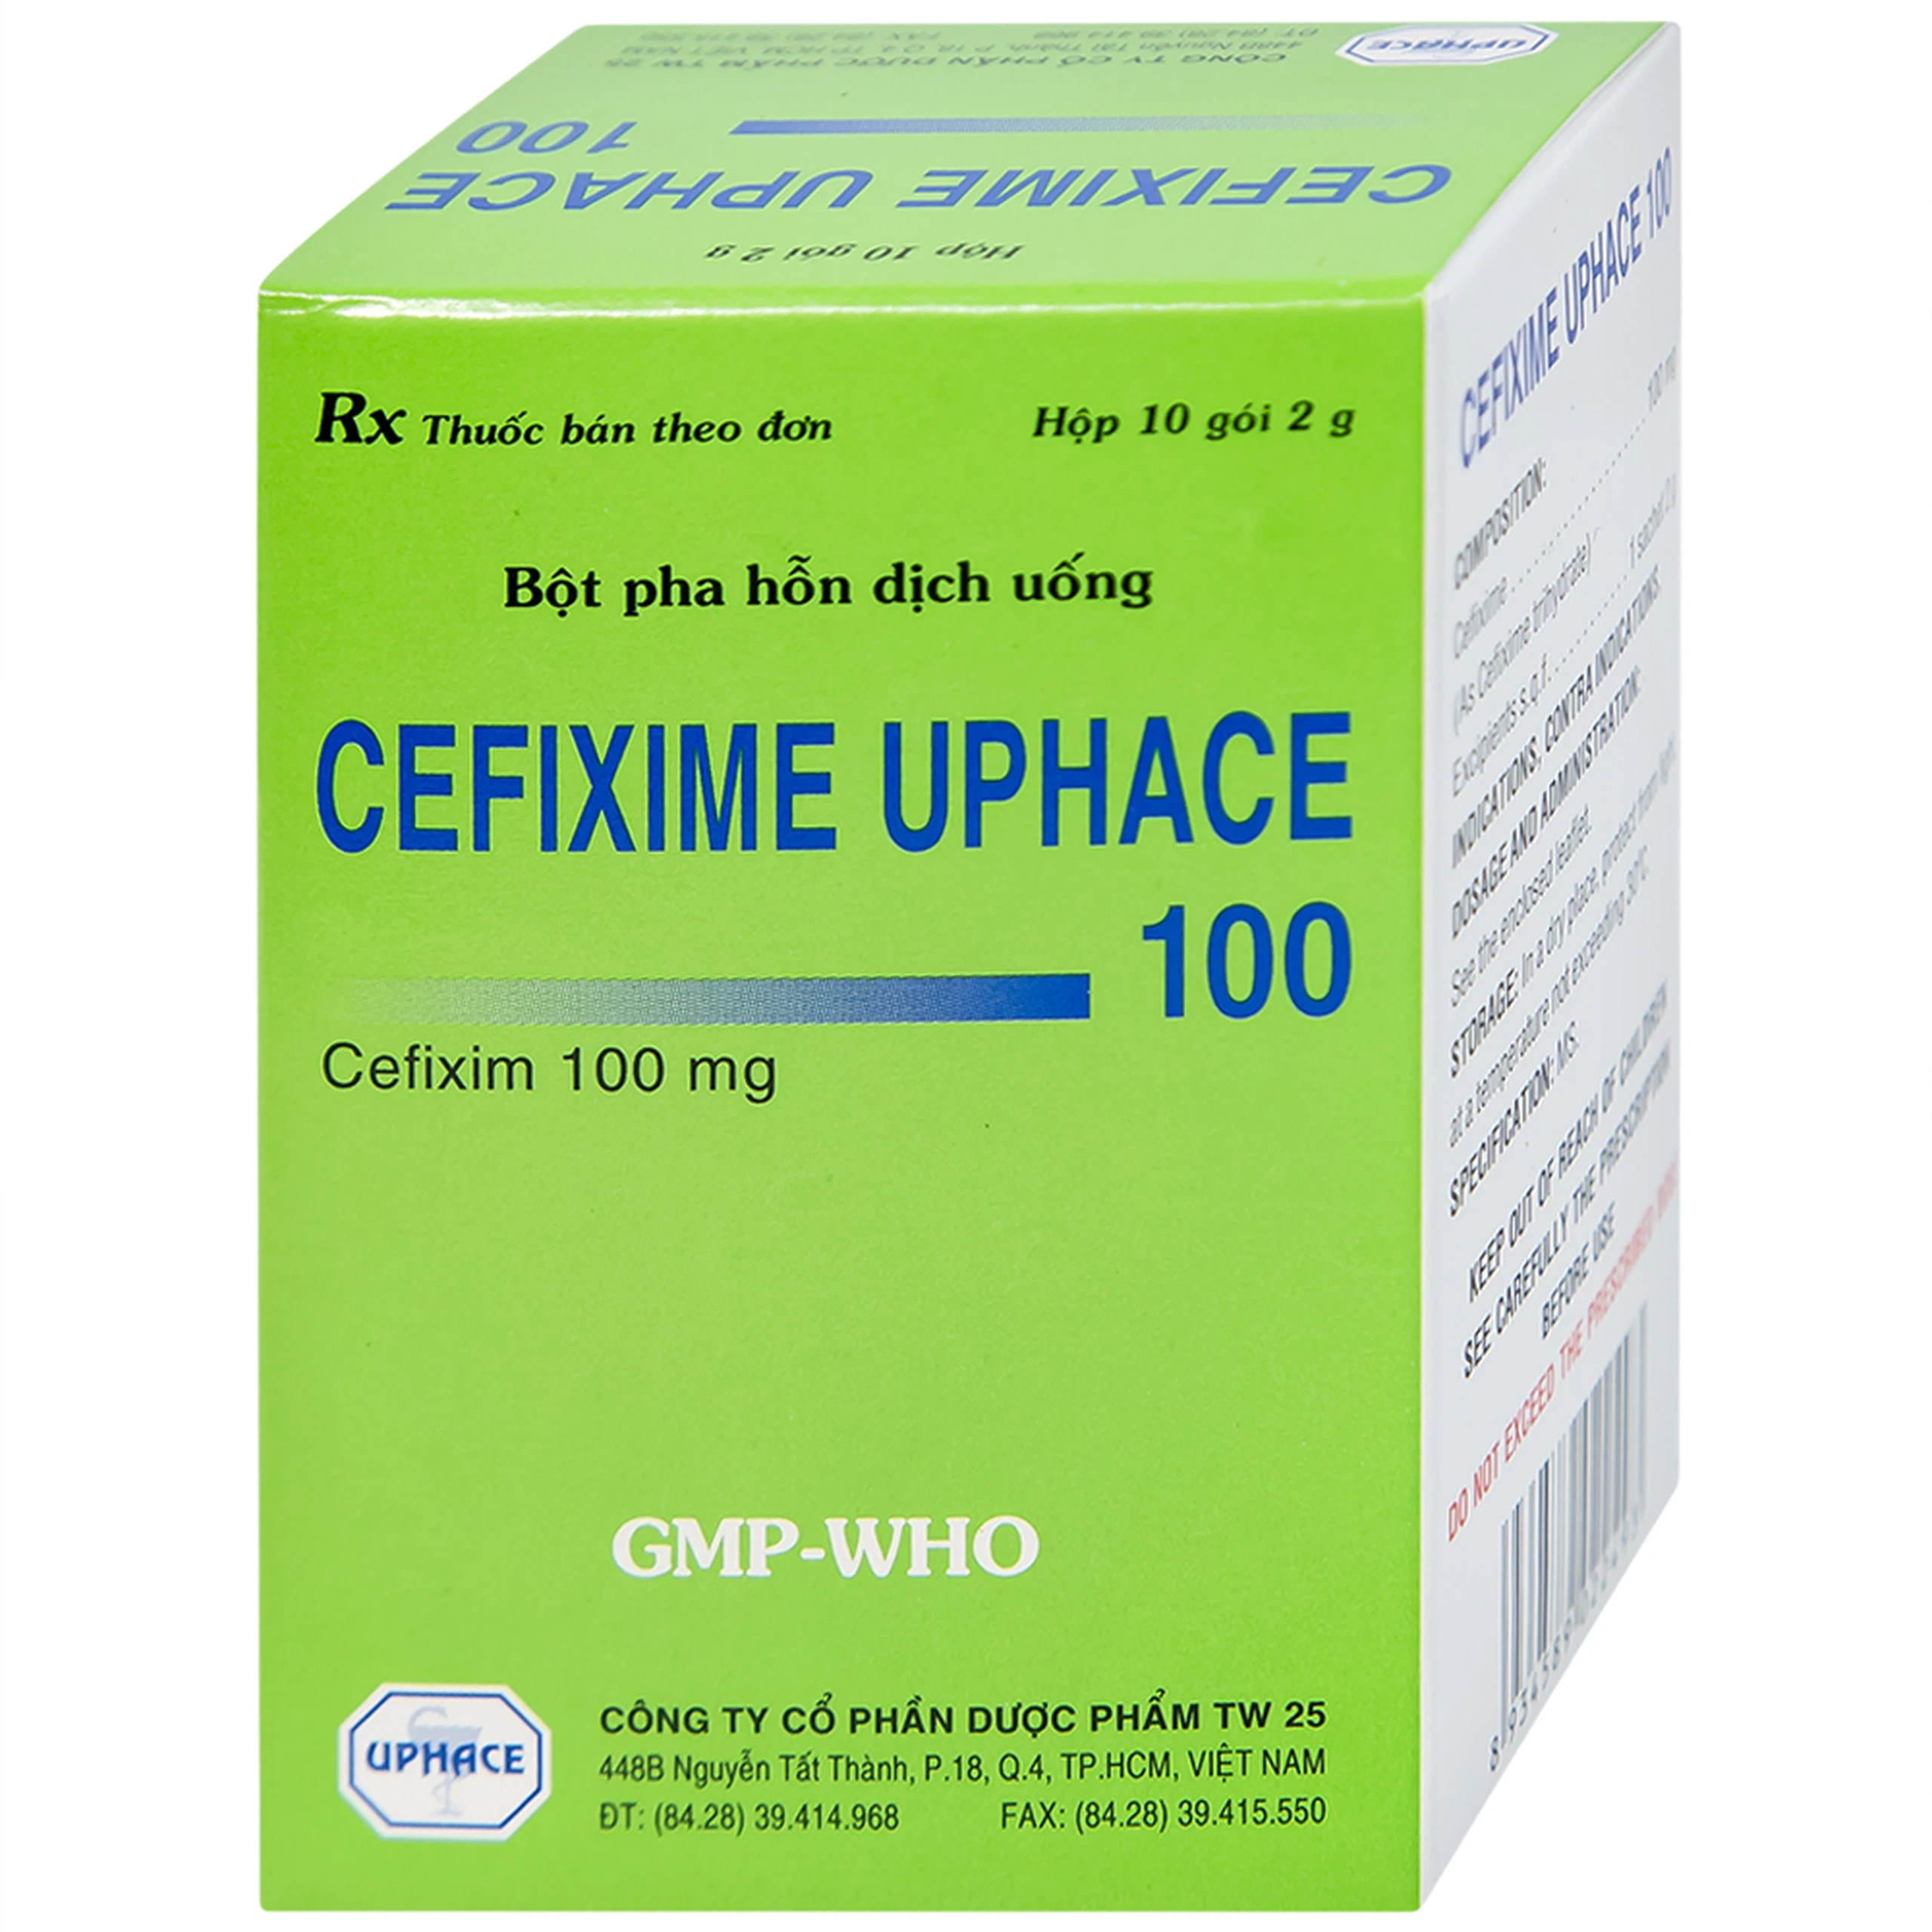 Bột pha hỗn dịch uống Cefixime Uphace 100mg điều trị nhiễm khuẩn (10 gói x 2g)